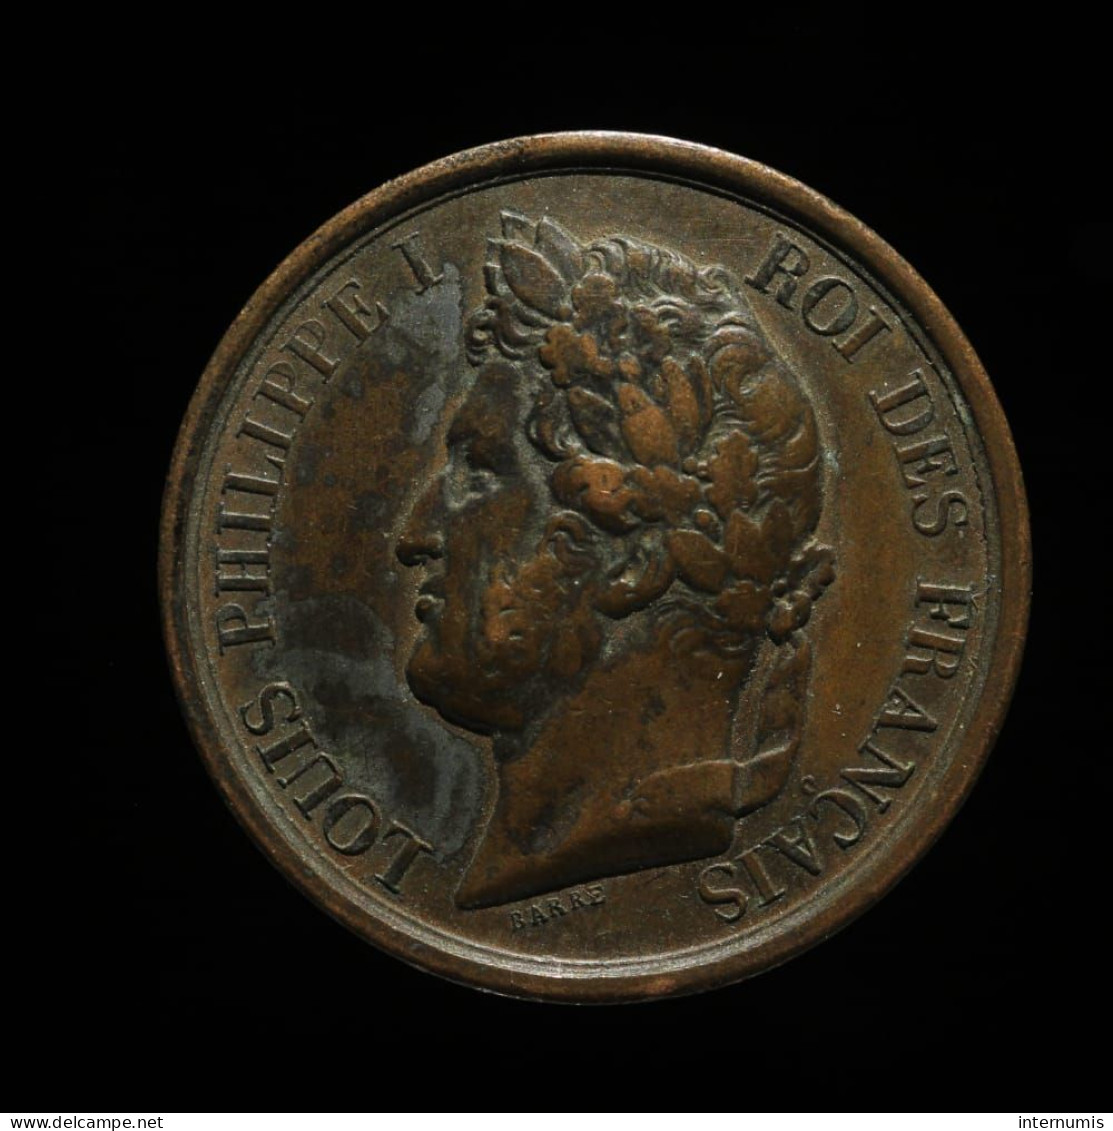 MEDAILLE / MEDAL : France, Louis-Philippe I, L'armée Au Duc D'Orleans Prince Royal, 1842, Cuivre (Copper), TTB+ (EF) - Royaux / De Noblesse